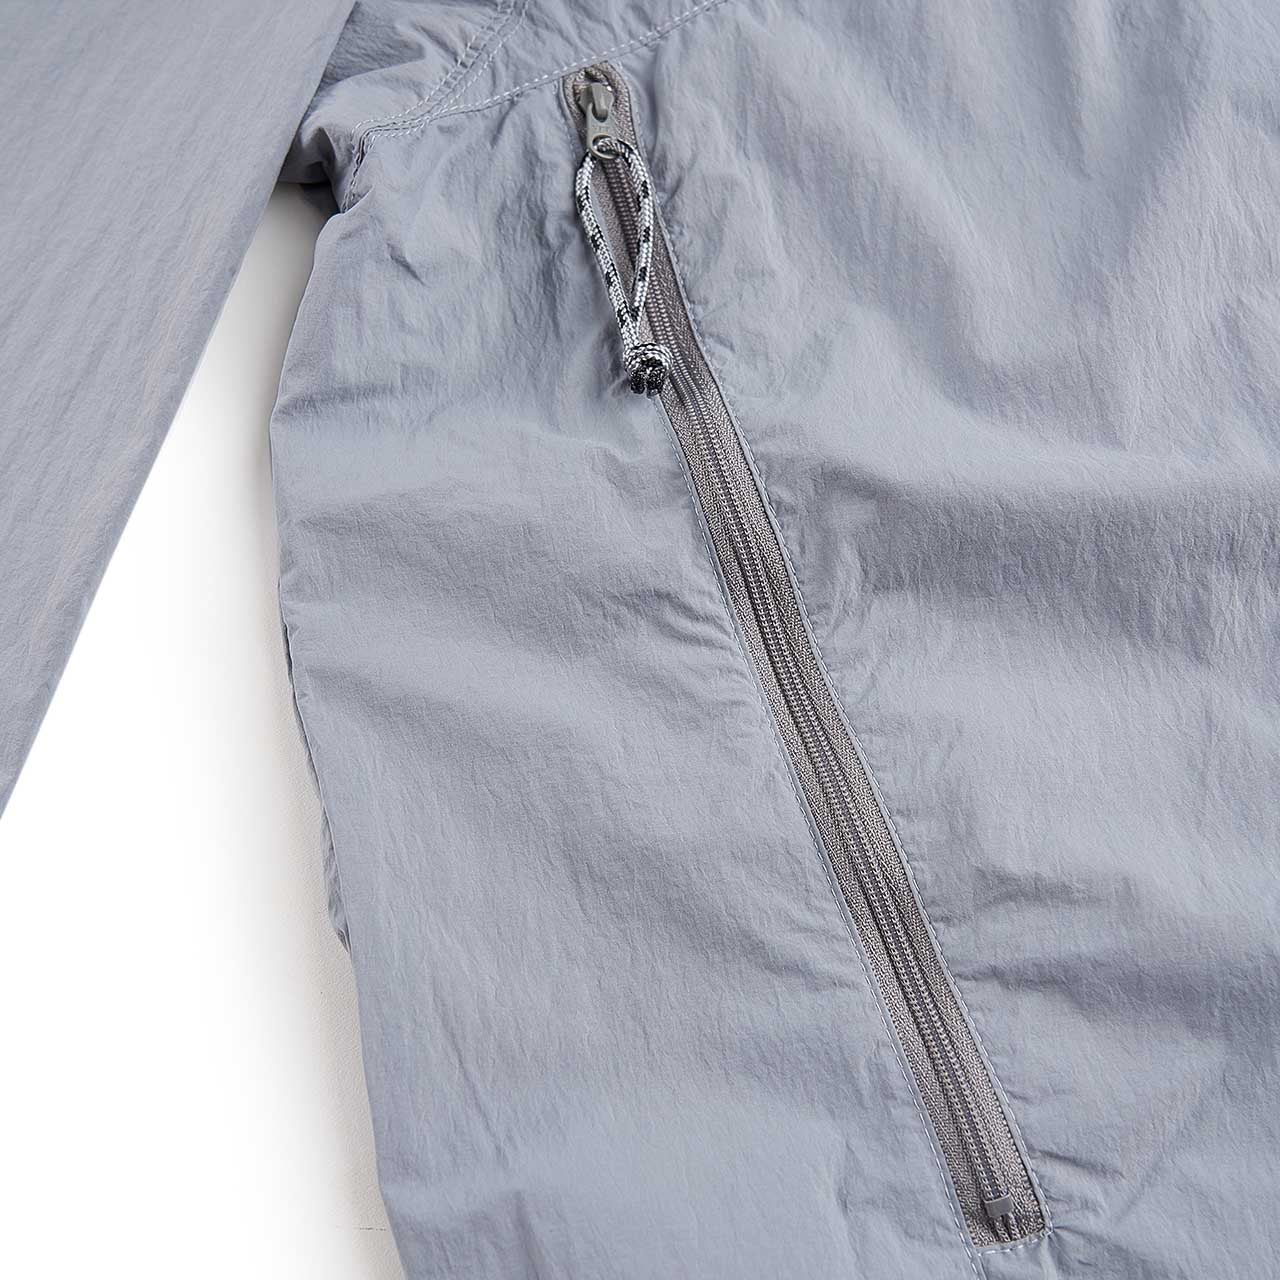 cav empt light nylon bdu jacket (grey)